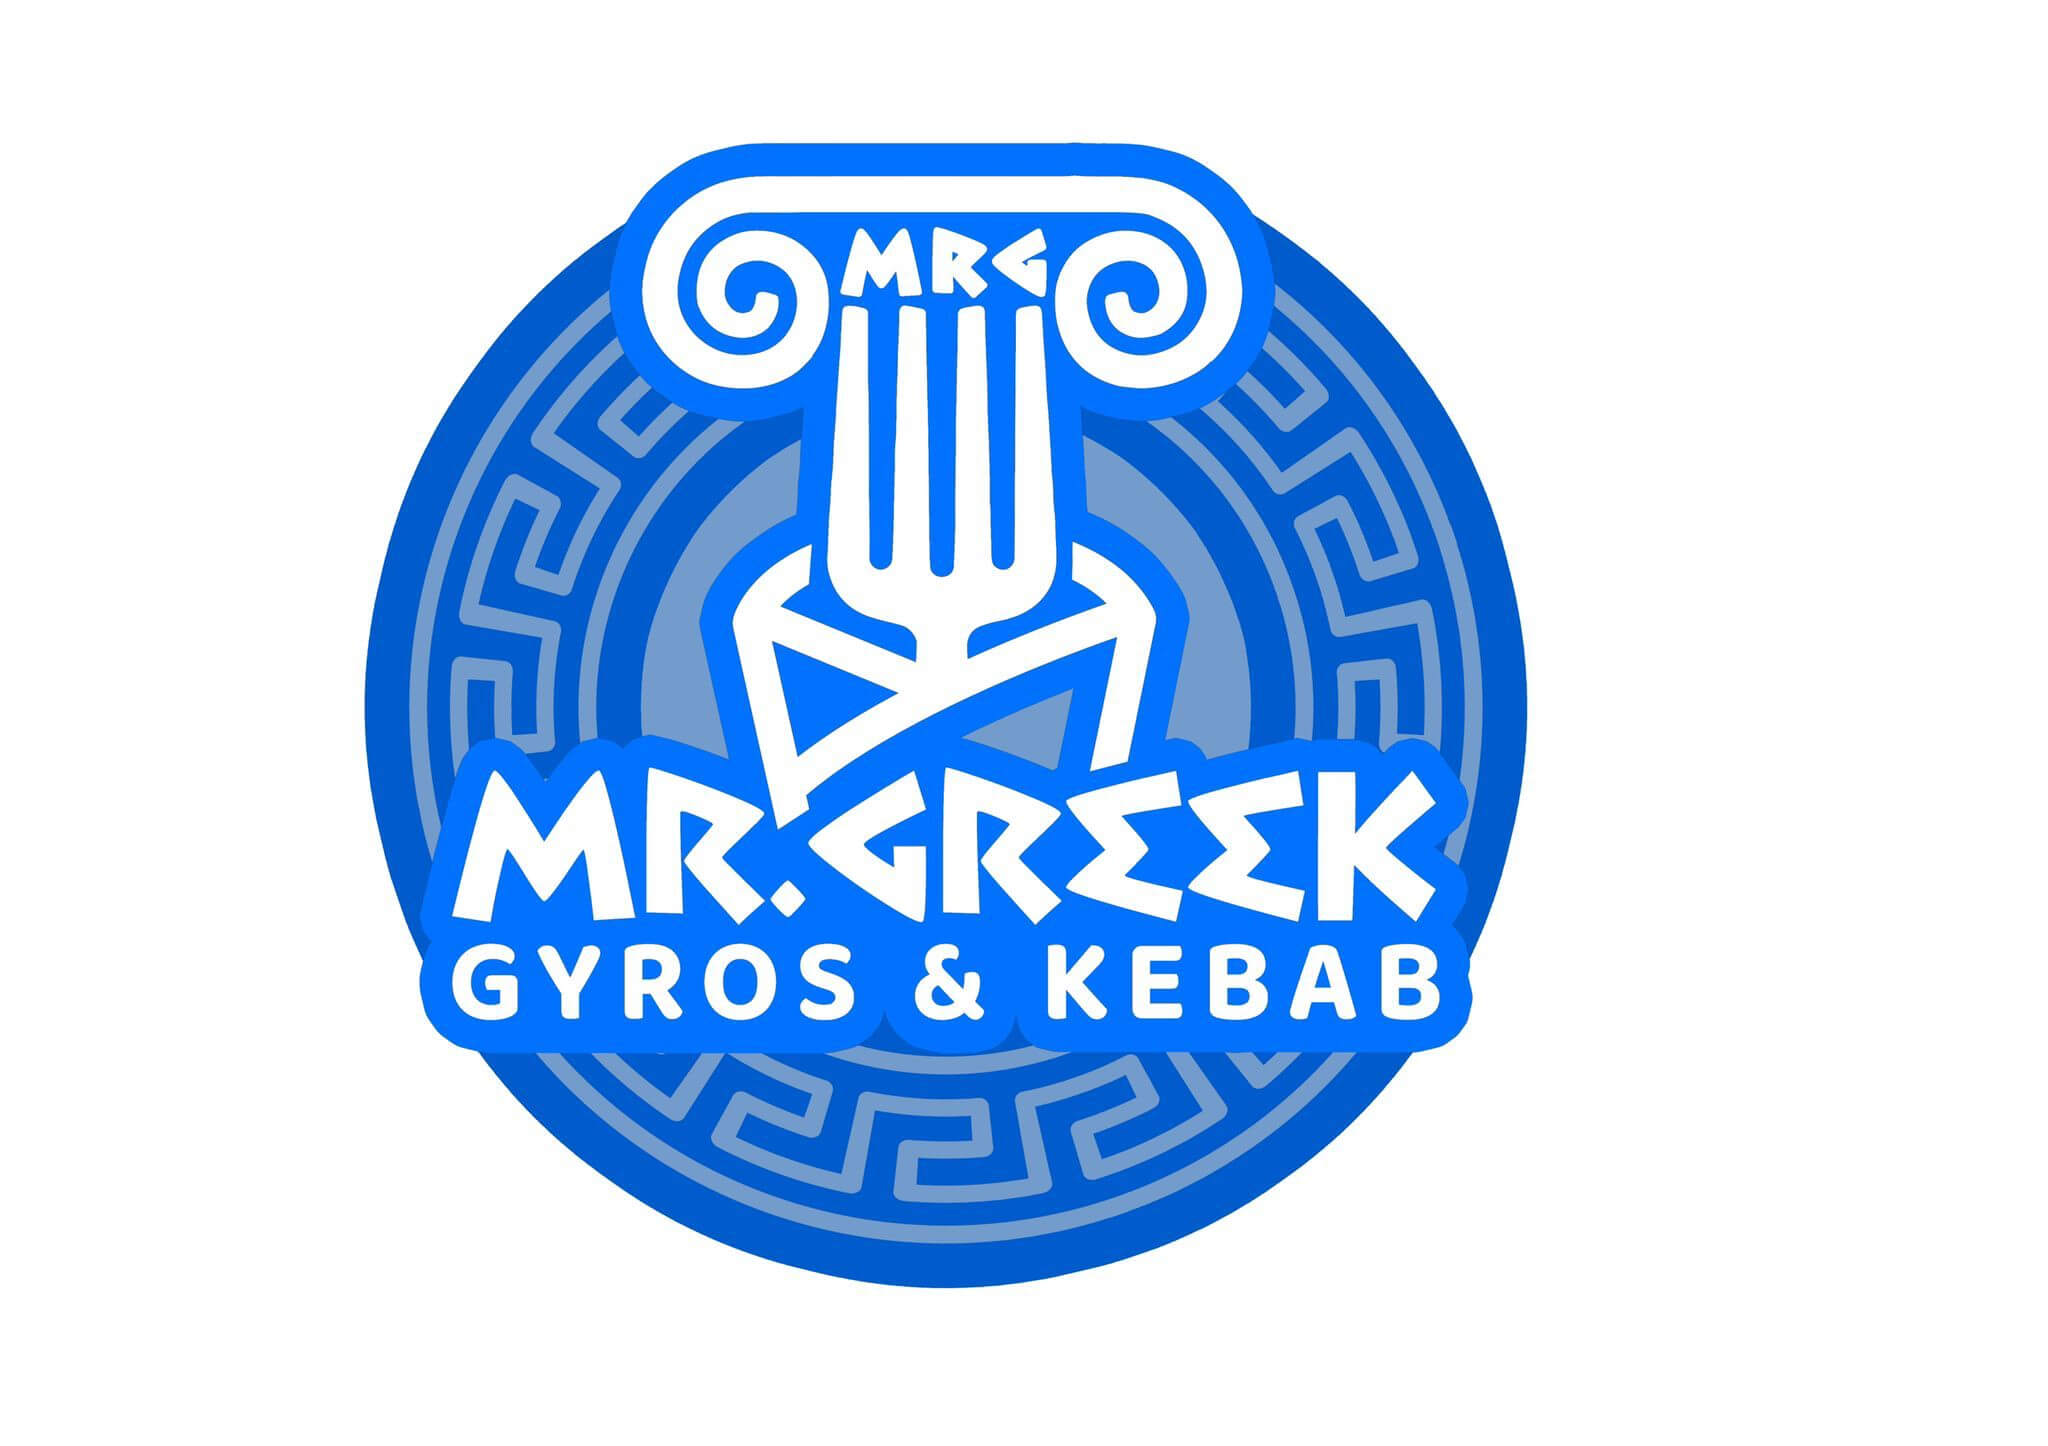 Mr. Greek Gyros & Kebab